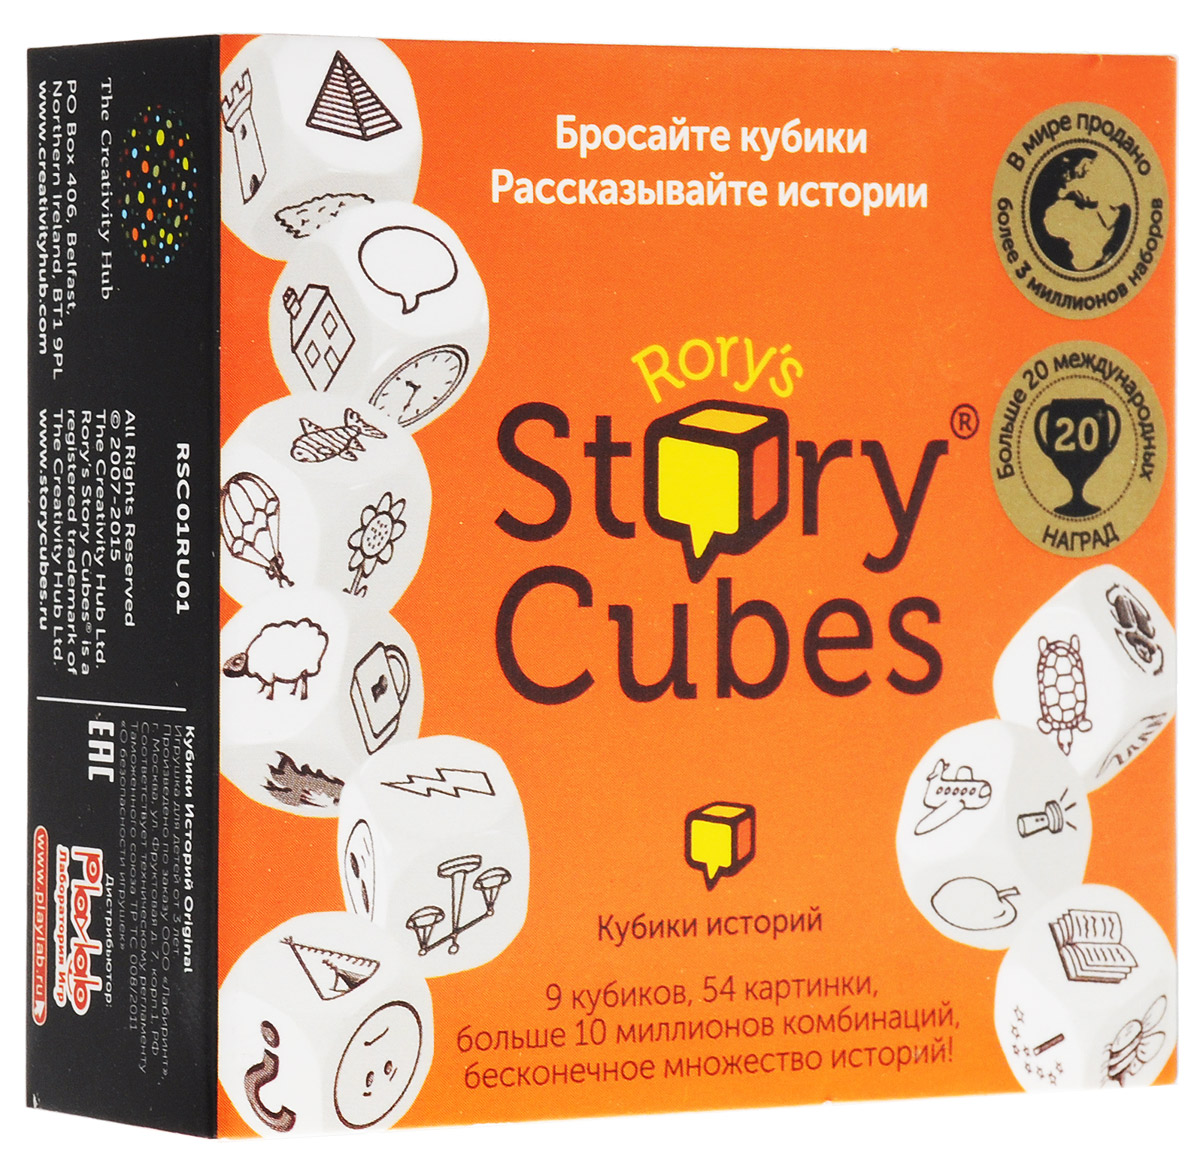 фото Story Cubes Игральные кубики Original Rory's story cubes